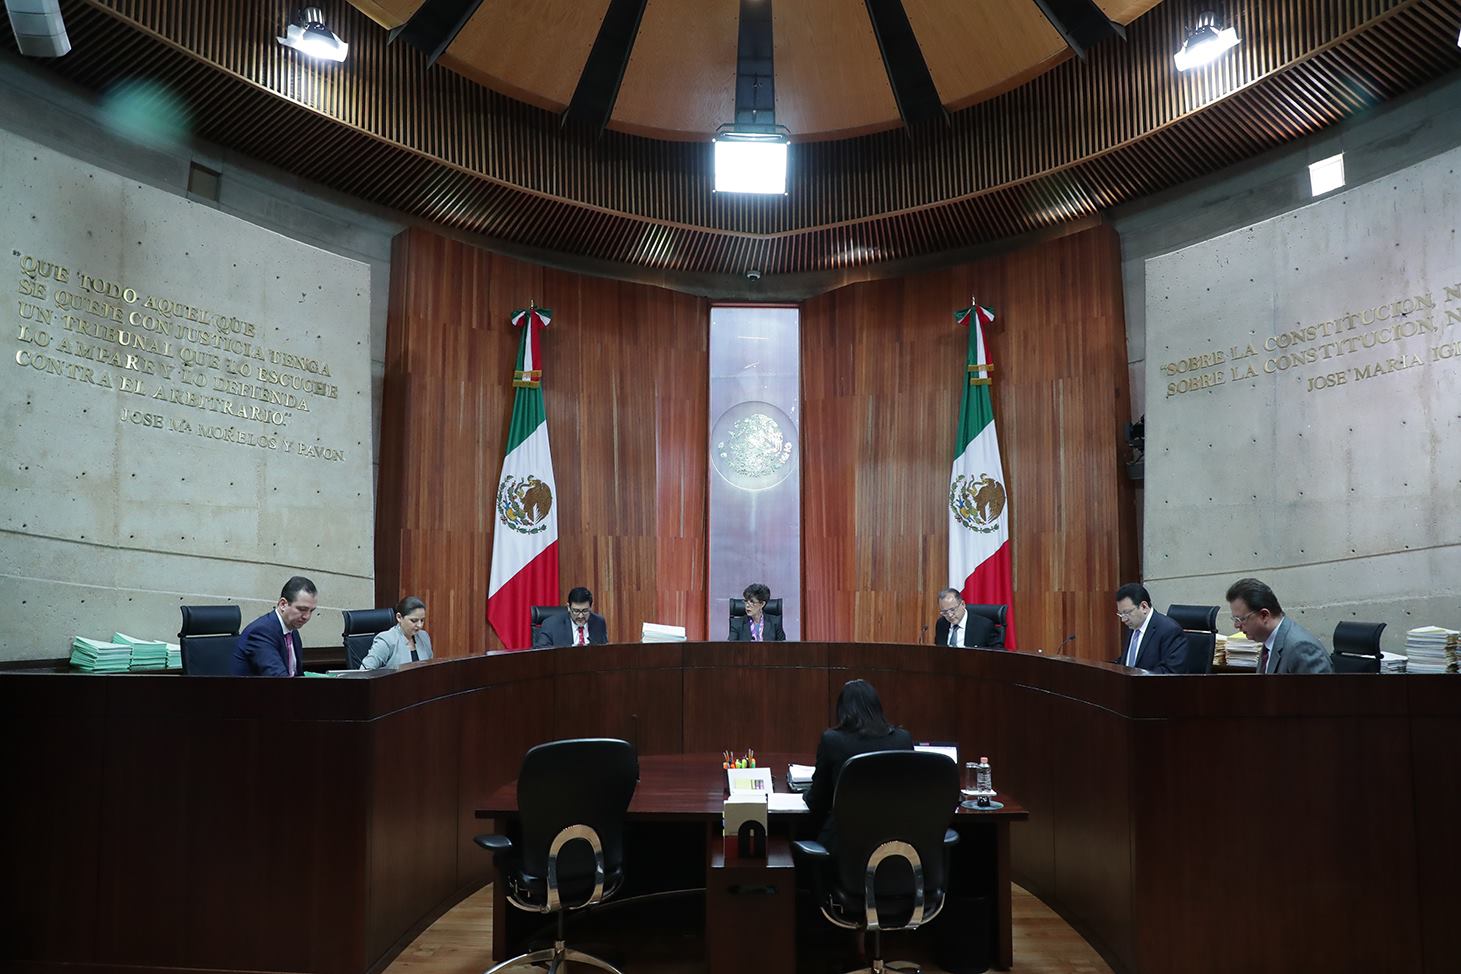 Constancia de mayoría para López Obrador, alista el TEPJF